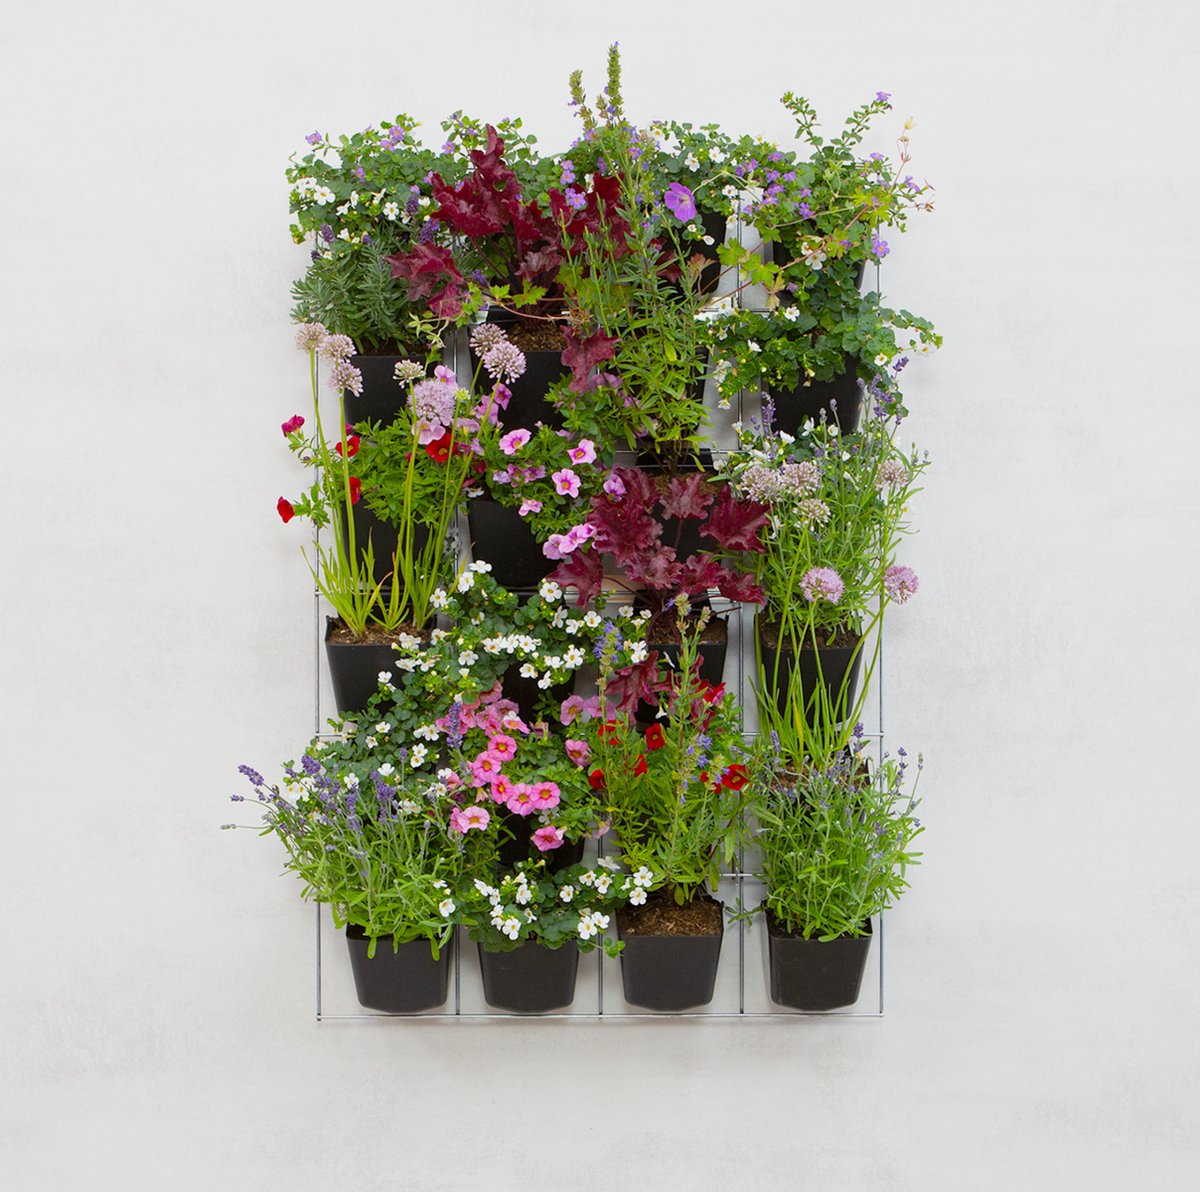 Mijn Verticale Tuin - Voor Buiten - Compleet Startpakket (Large) 90cm x 60cm - 24 Bakjes - Plantenbak aan de muur - Groene wand - Groene muur - Verticale Moestuin - Balkonbak - Plantenmuur - Muurtuin